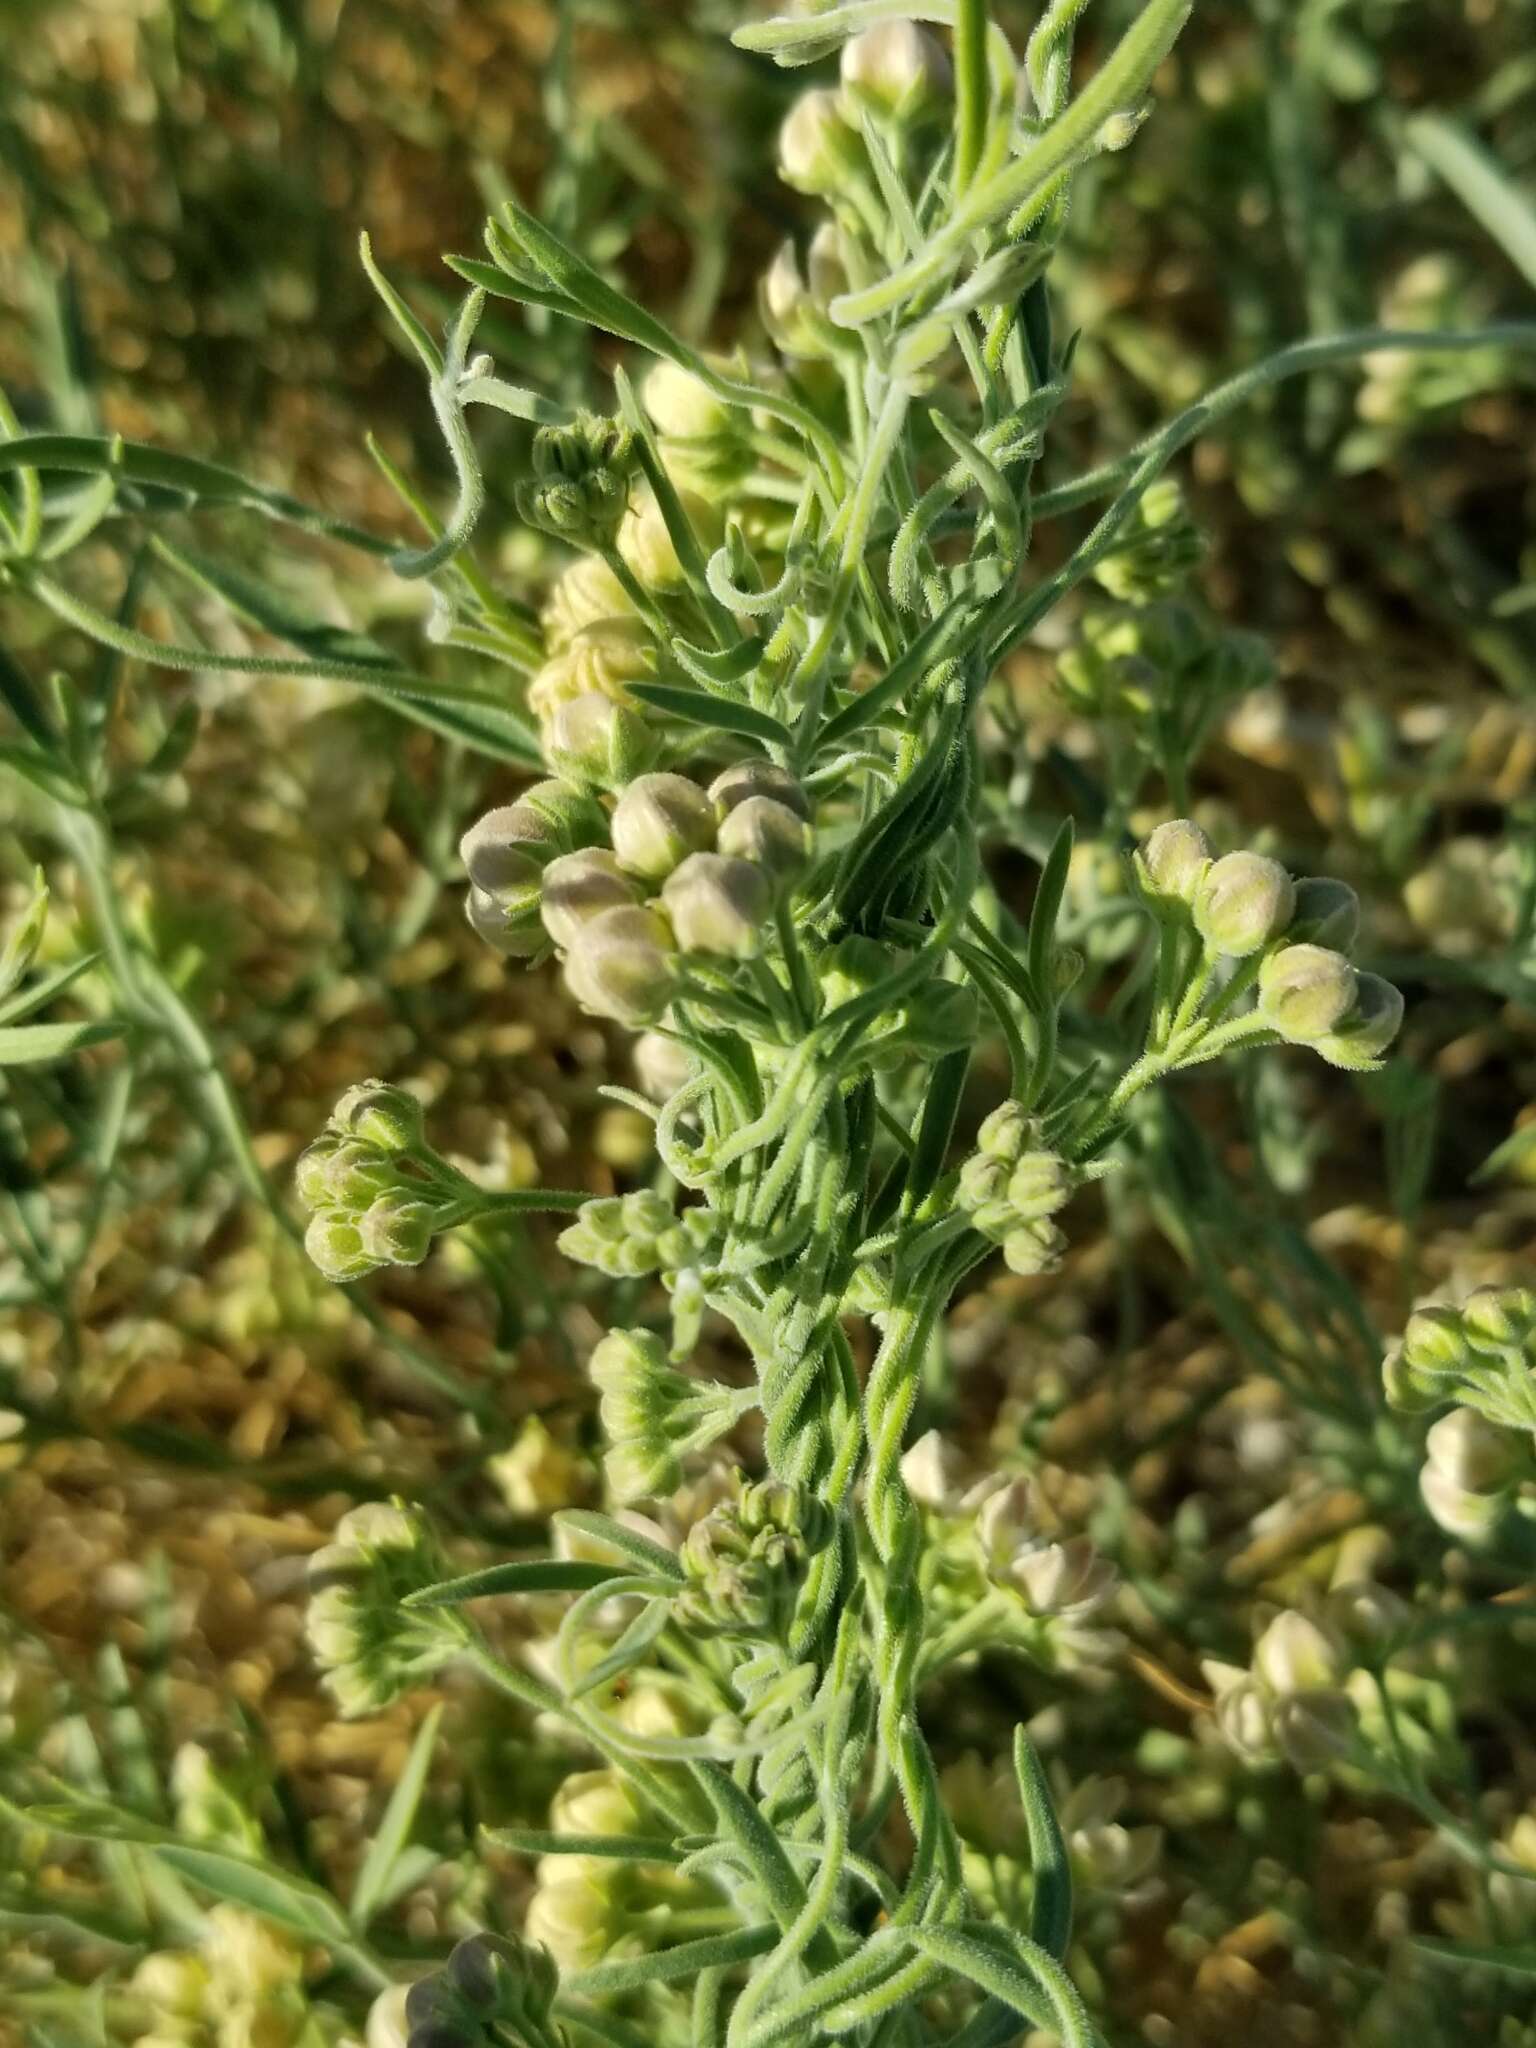 Image of hairy milkweed